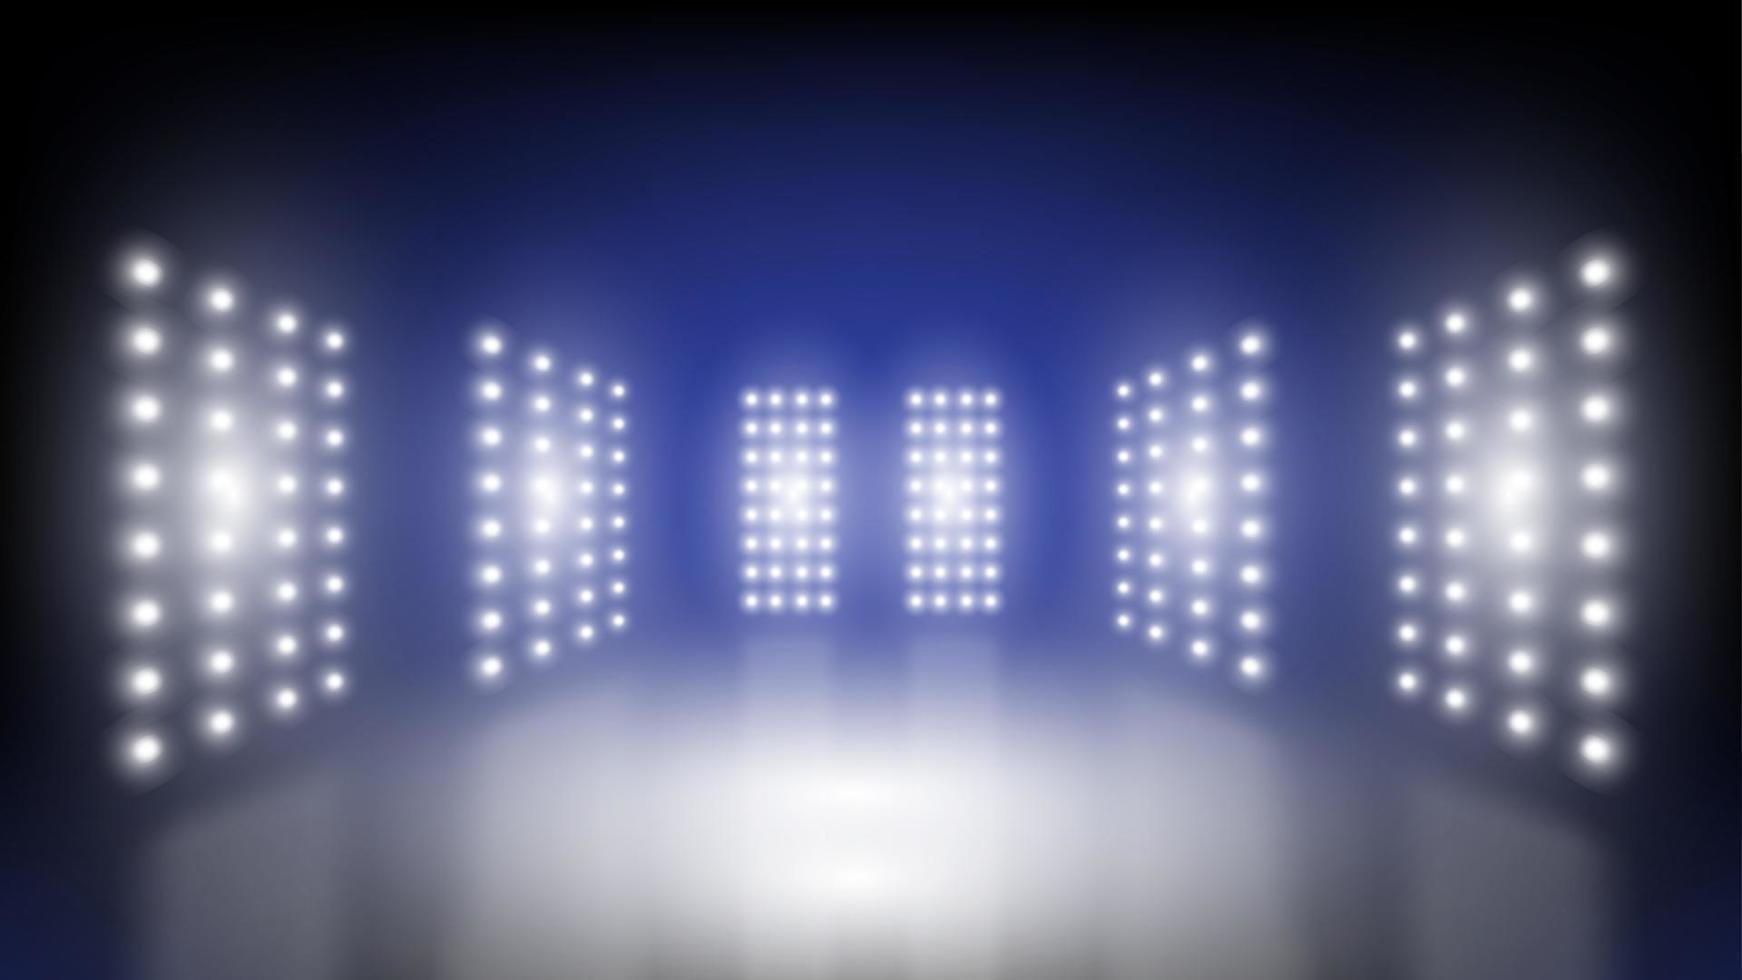 fondo de tecnología abstracta sala de escenario del estadio con luces escénicas de interfaz de usuario de tecnología futurista redonda iluminación vectorial azul fondo de foco de escenario vacío. vector